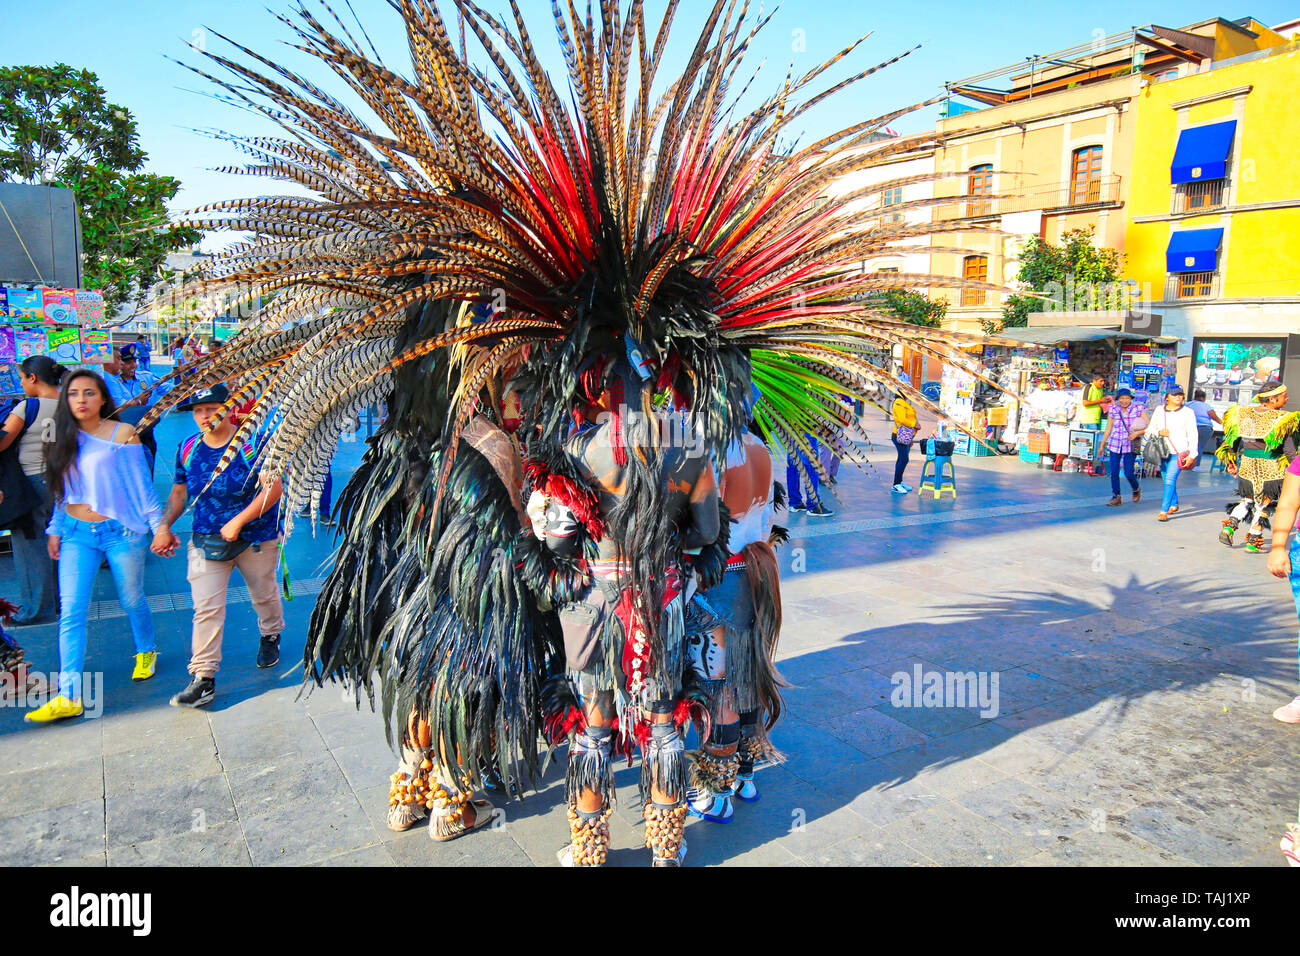 La ville de Mexico, Mexique-23 Avril, 2019 : festival indien et célébrations tribal sur place Zocalo à Mexico Banque D'Images